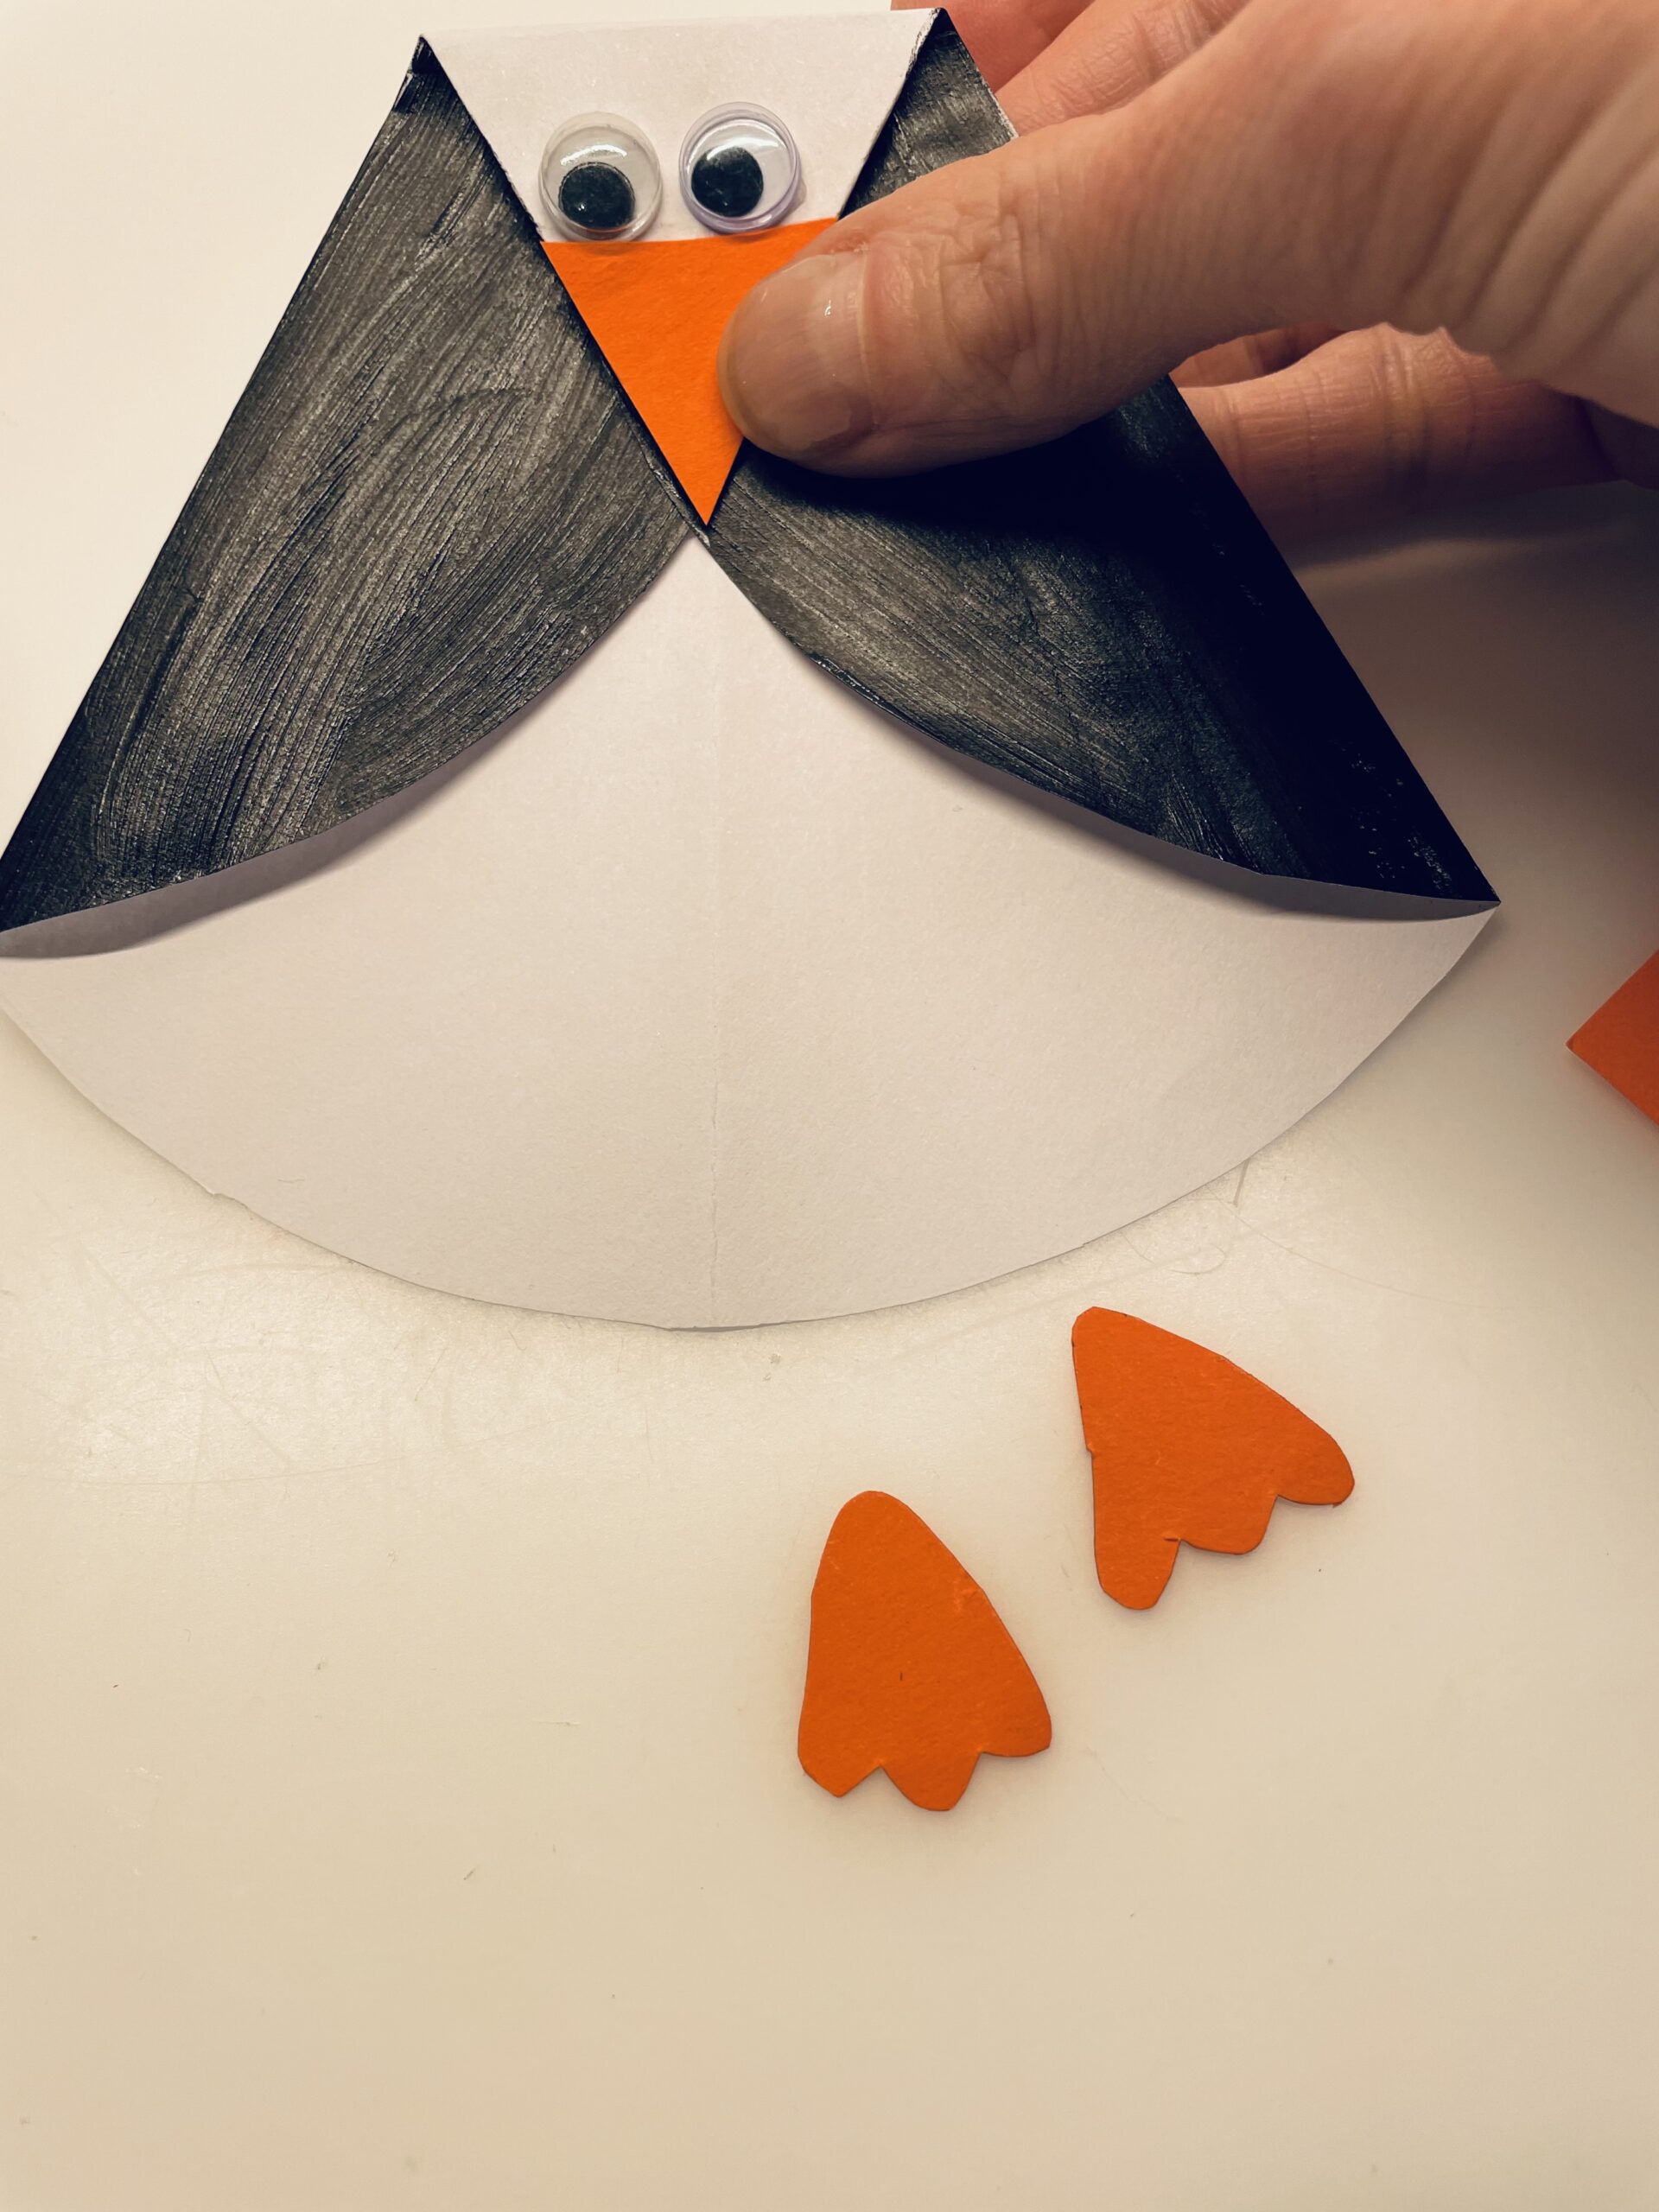 Bild zum Schritt 9 für das Bastel- und DIY-Abenteuer für Kinder: 'Jetzt malt euch auf orangefarbenes Papier zwei Füße für den...'